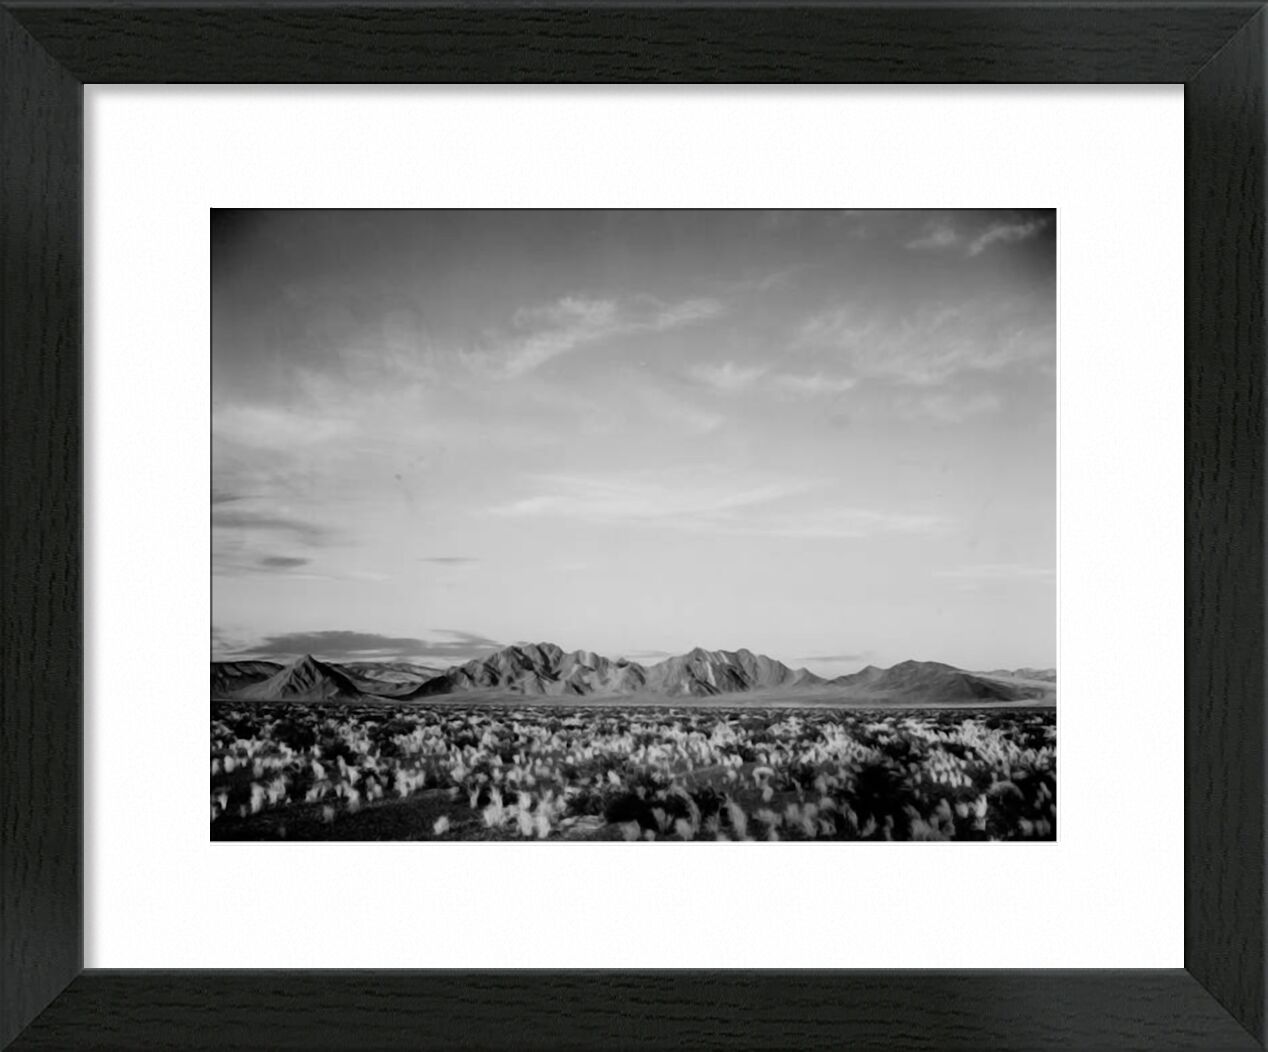 View Of Montains Desert Shrubs Highlighted - Ansel Adams von Bildende Kunst, Prodi Art, ANSEL ADAMS, Schwarz und weiß, Berge, Sträucher